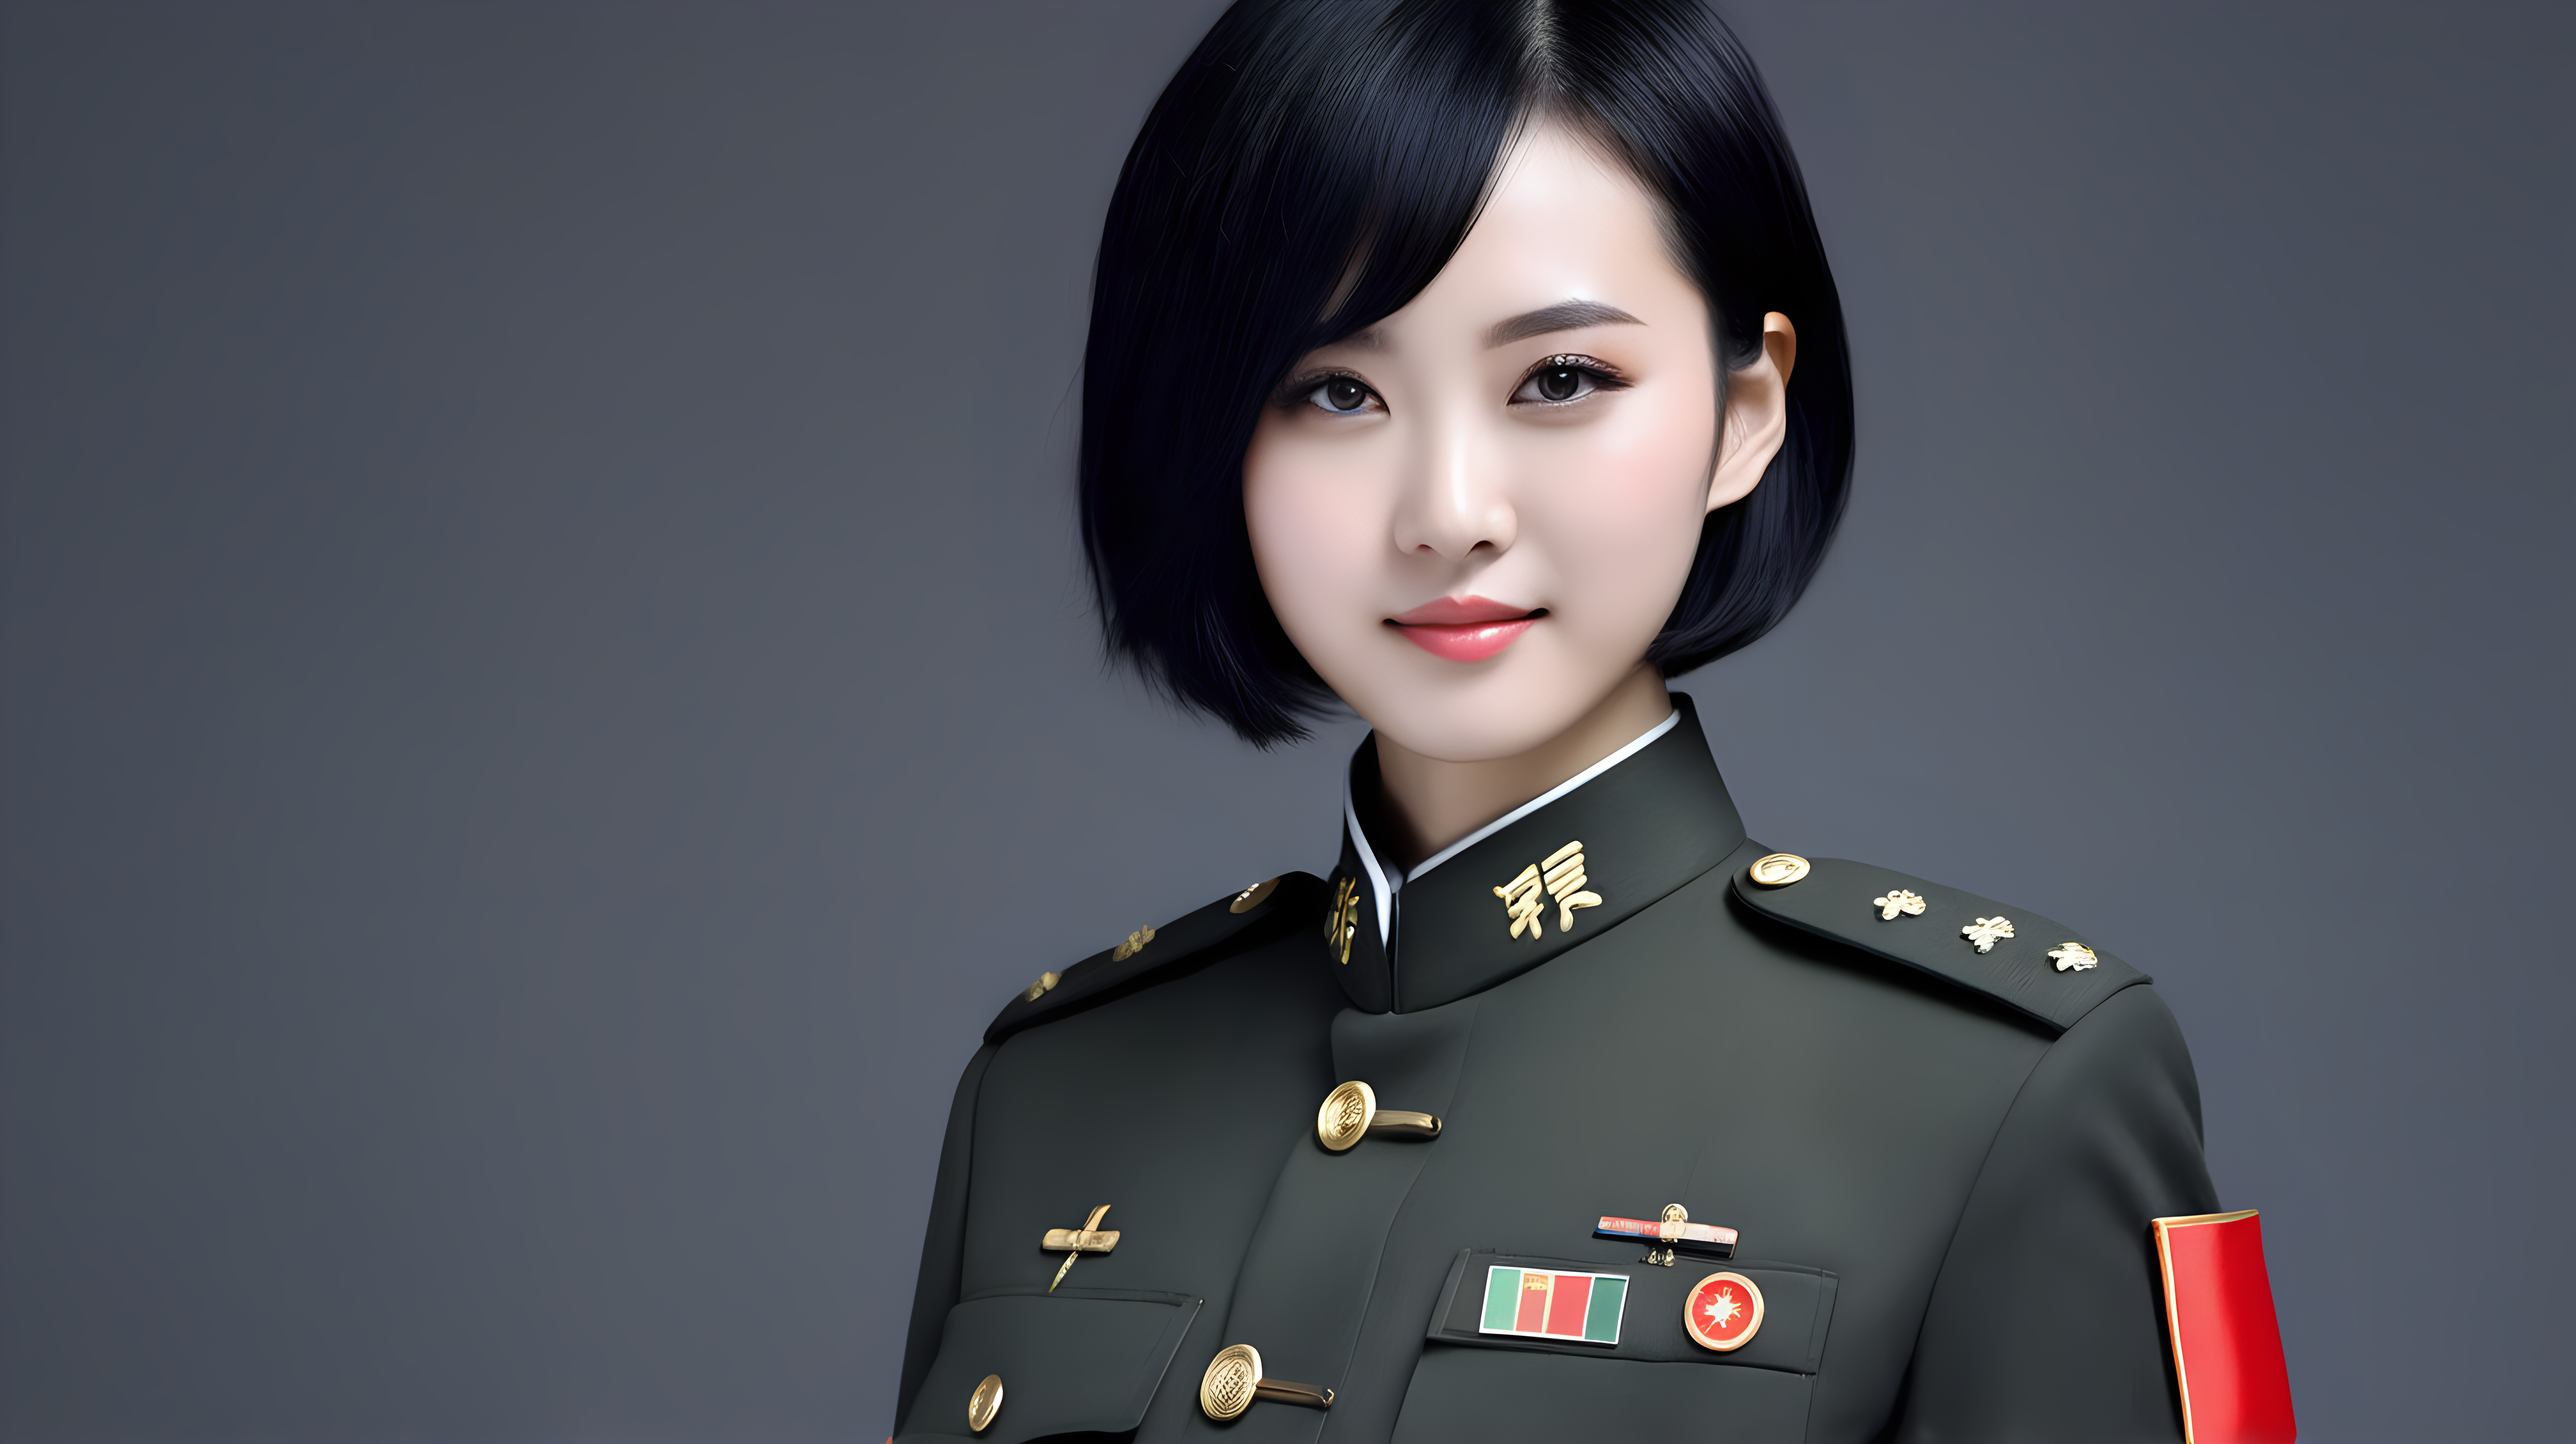 一名中国女兵
少女
短发
黑发
主持新闻